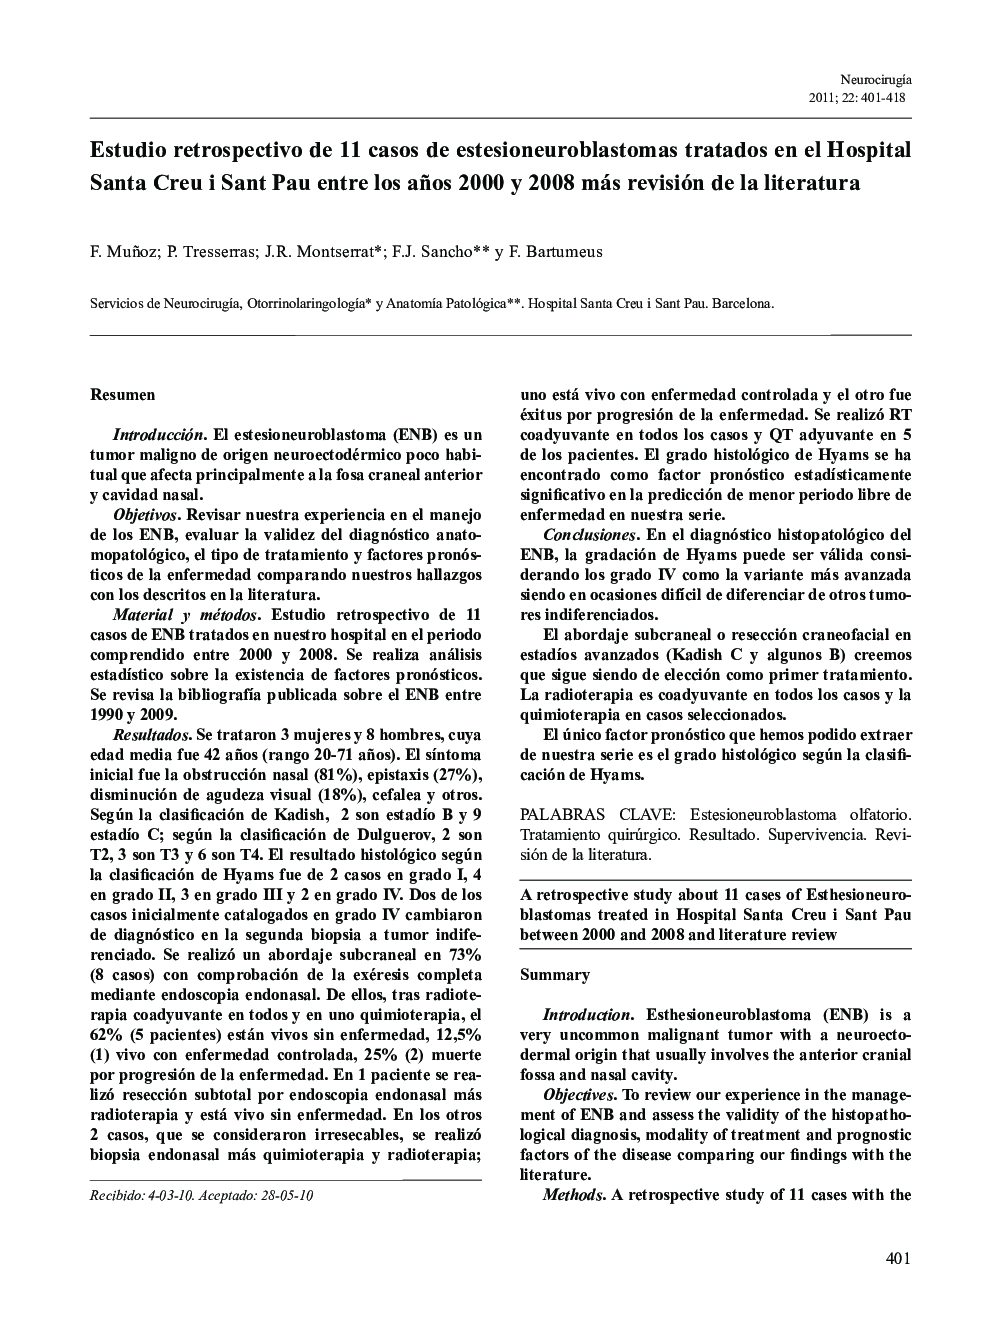 Estudio retrospectivo de 11 casos de estesioneuroblastomas tratados en el Hospital Santa Creu i Sant Pau entre los años 2000 y 2008 más revisión de la literatura